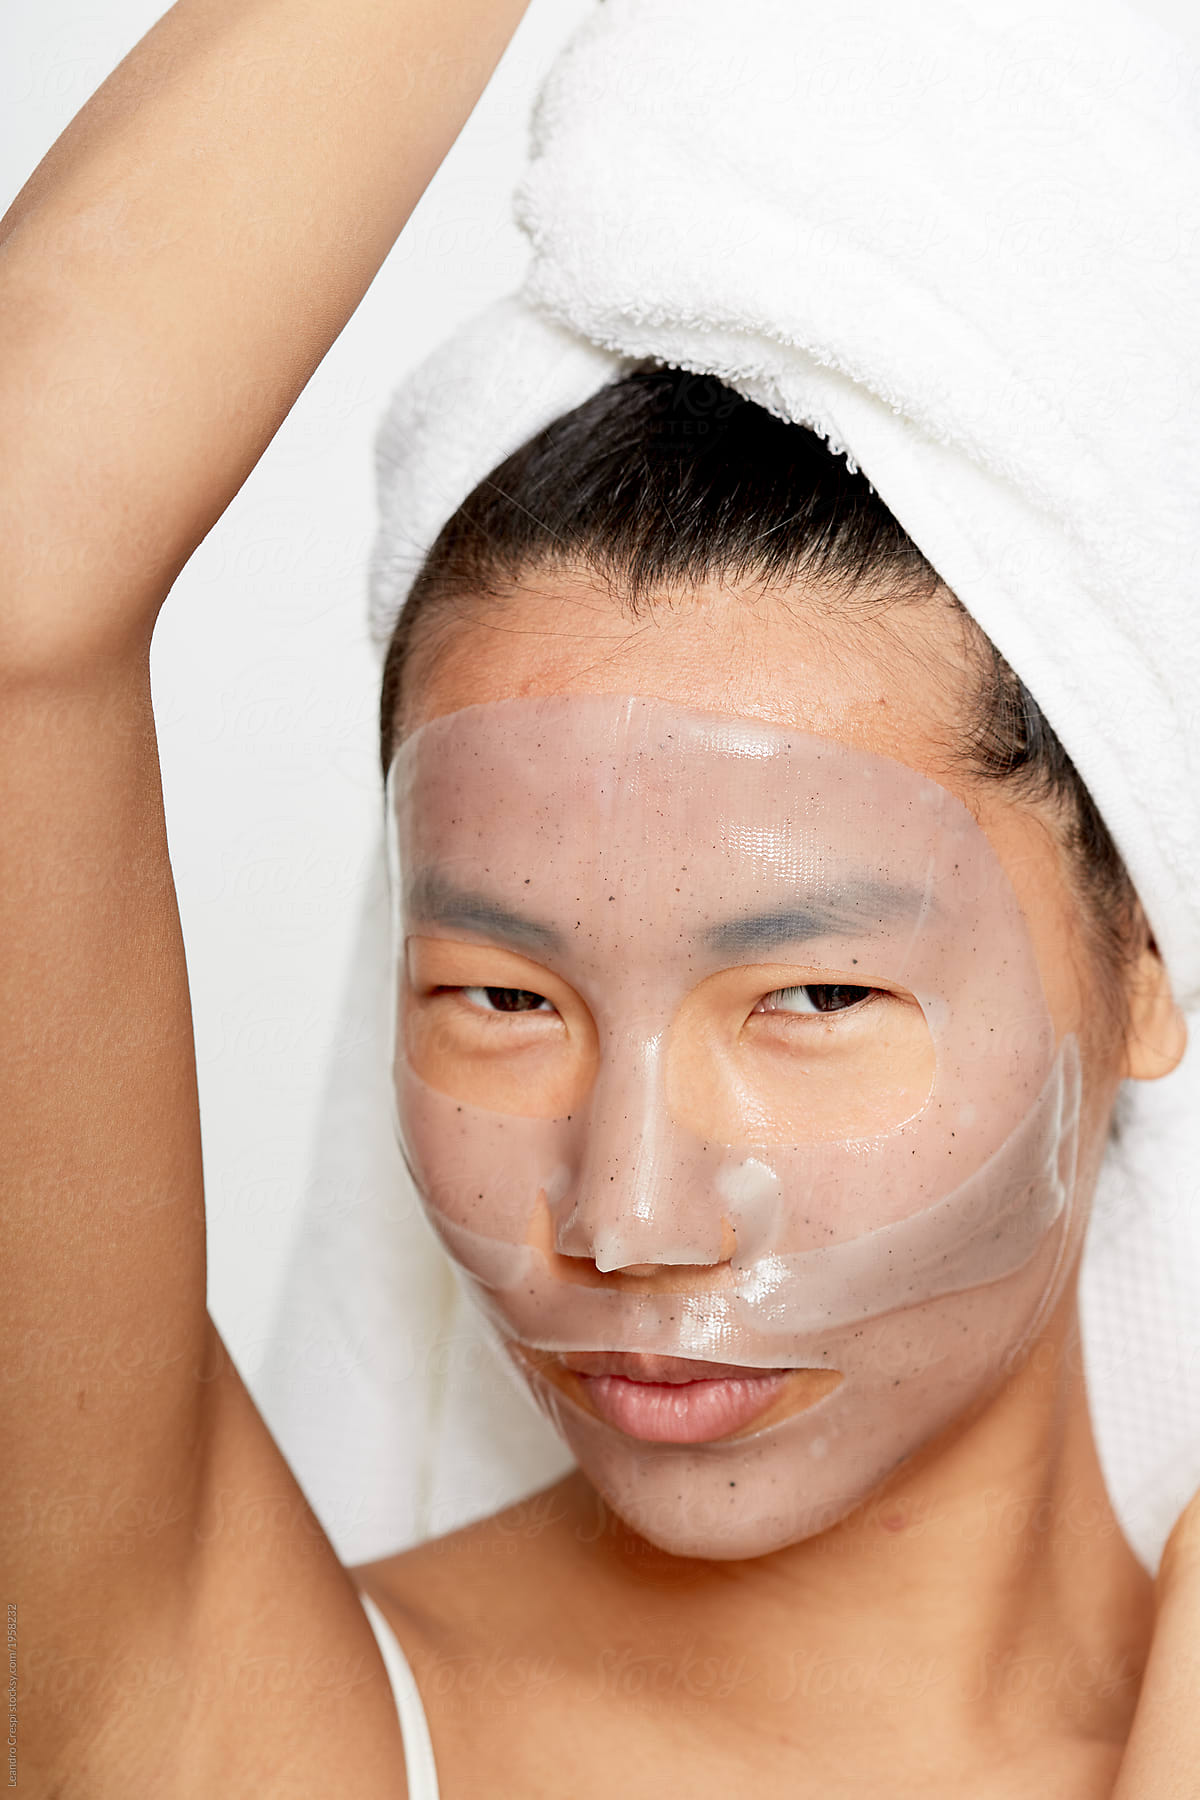 Smiling young asian woman enjoying facial gel mask